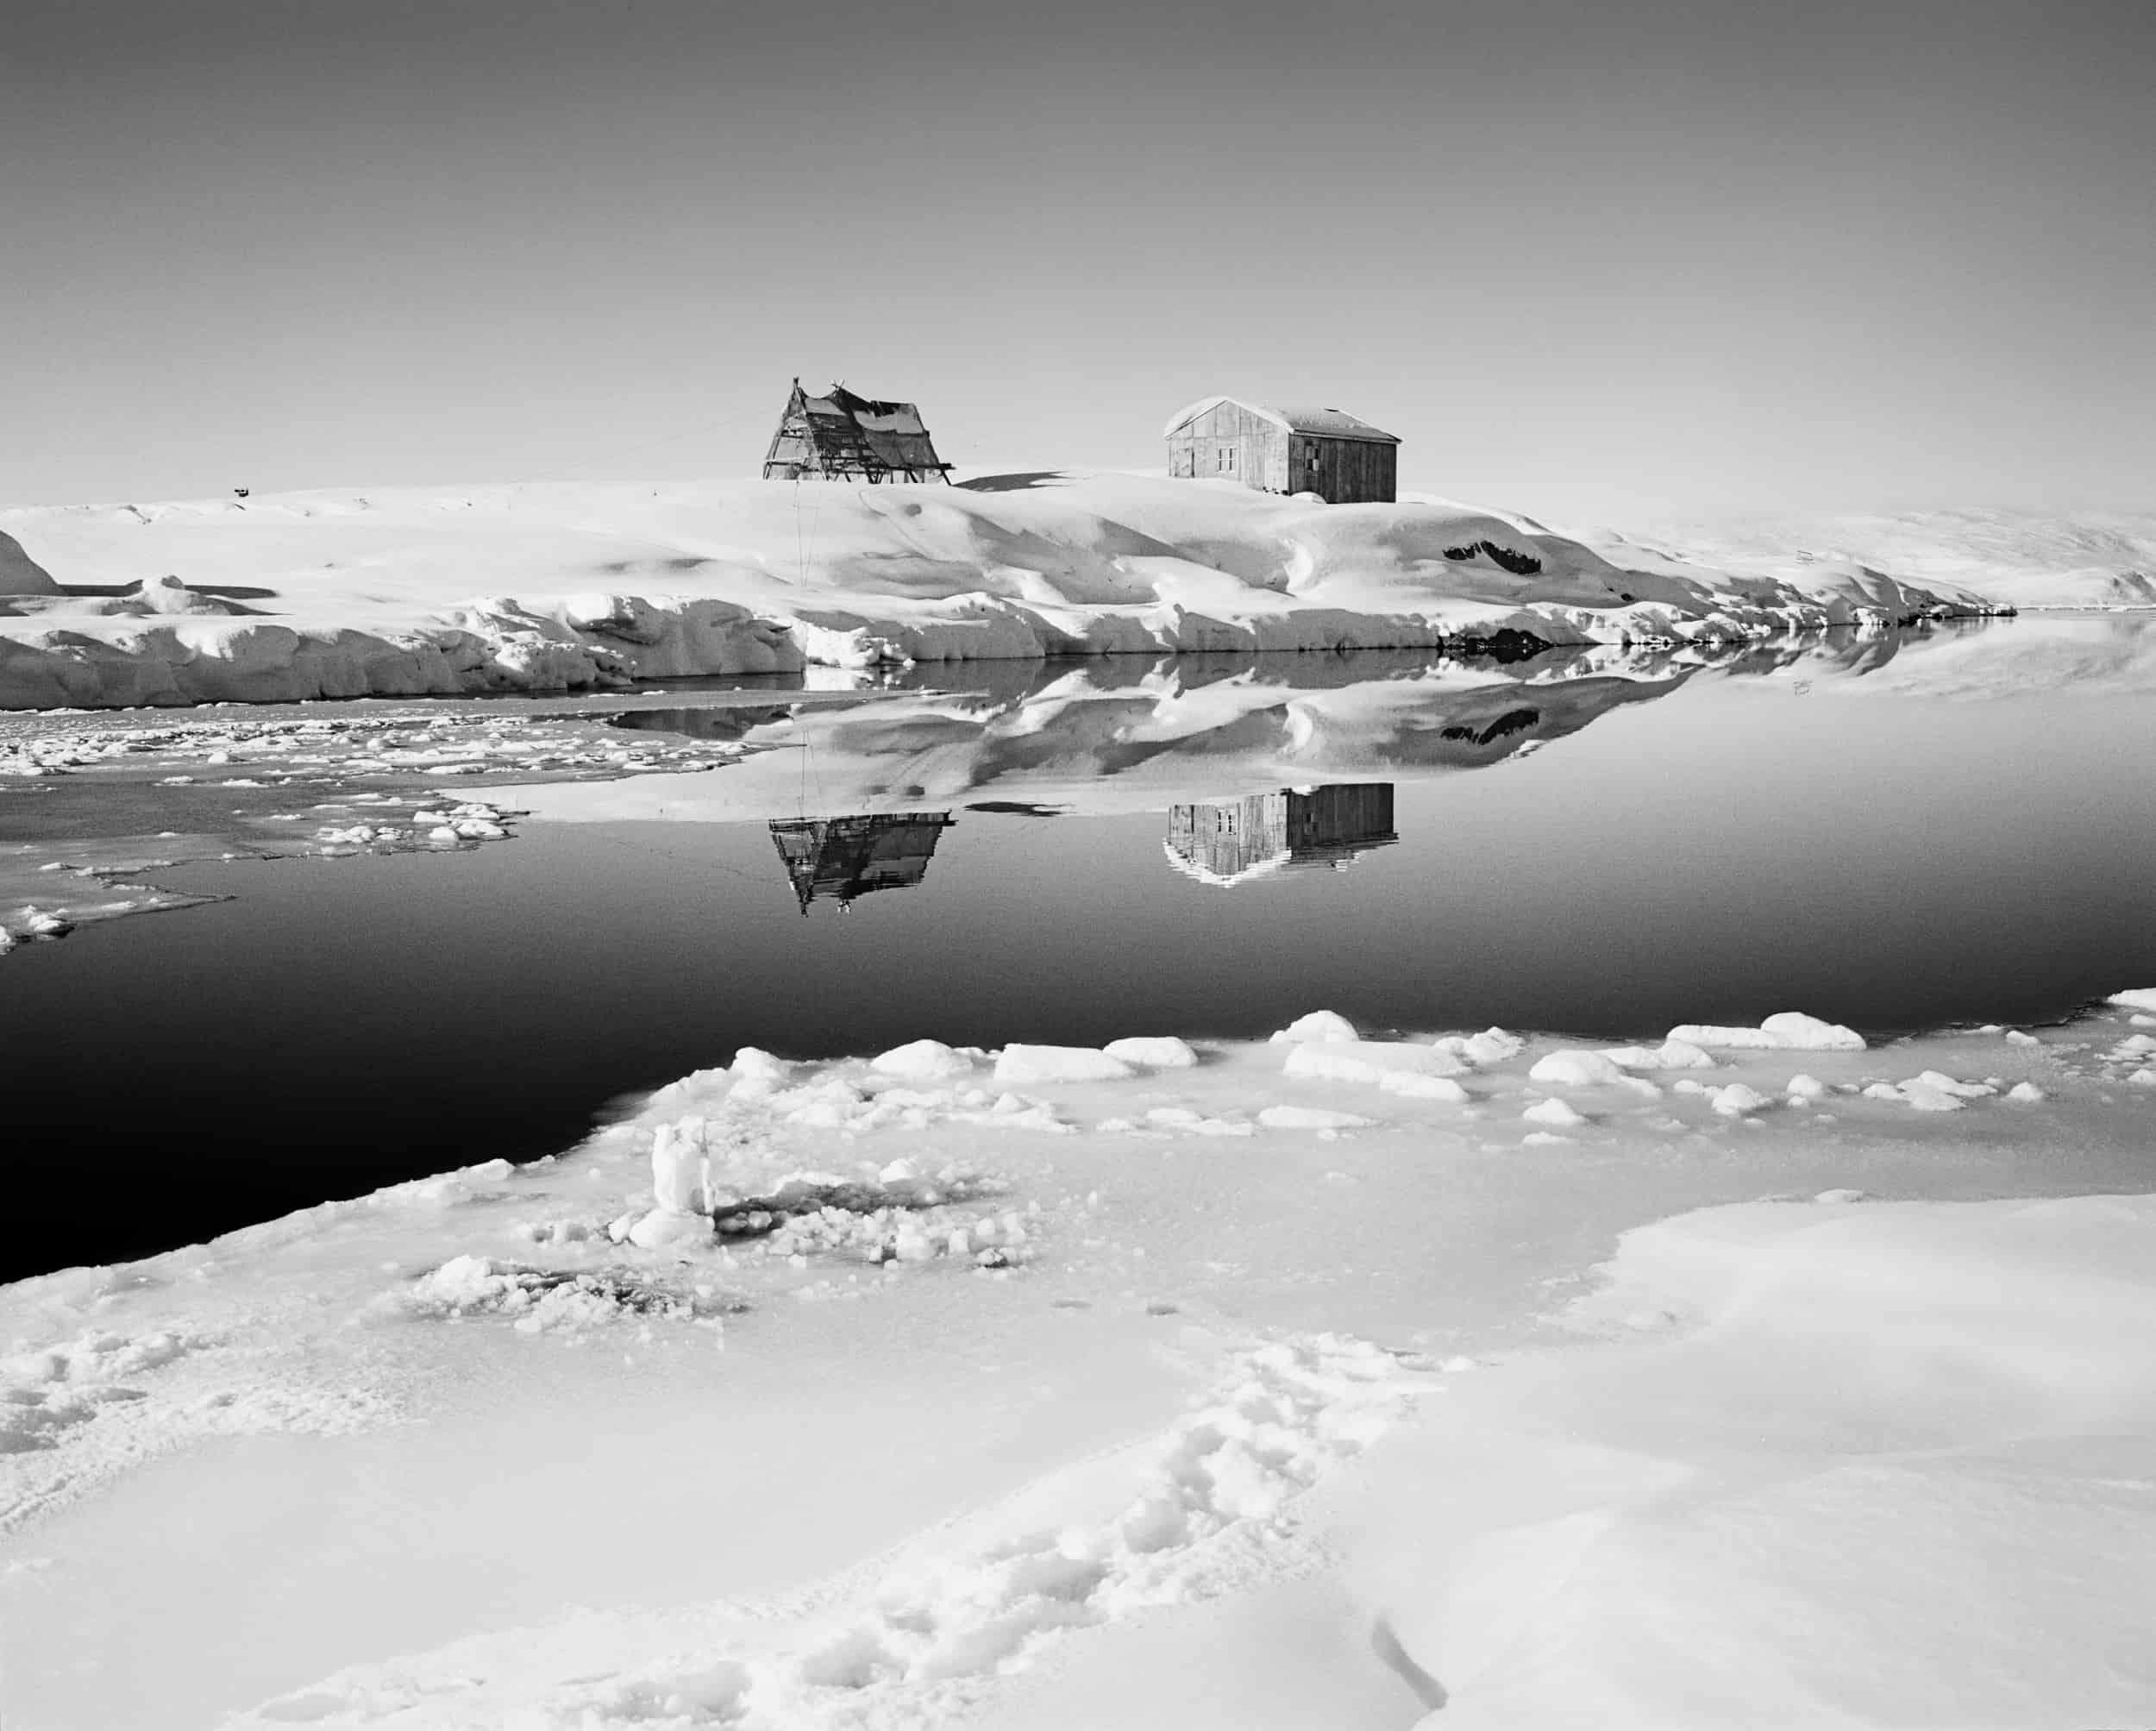 Paolo Solari Bozzi© - Tiniteqilaaq, Groenlandia 2016-min